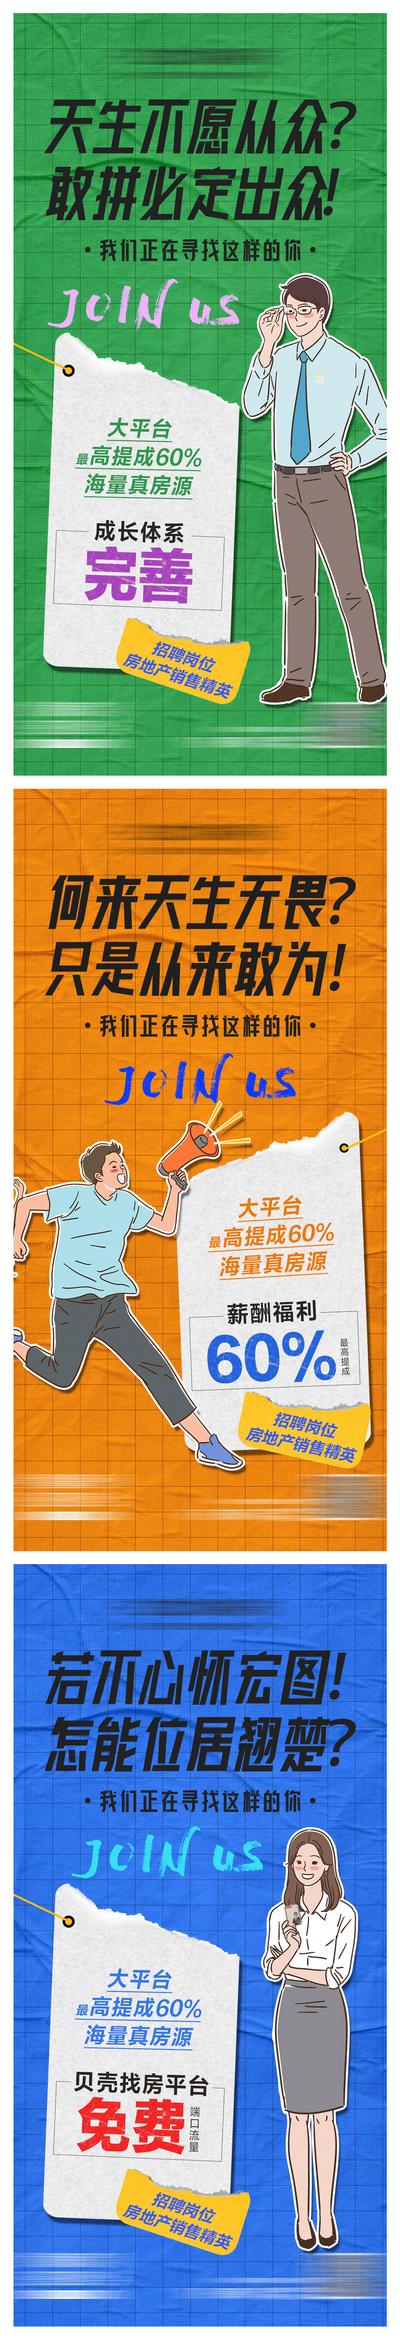 南门网 招聘缤纷插画系列海报